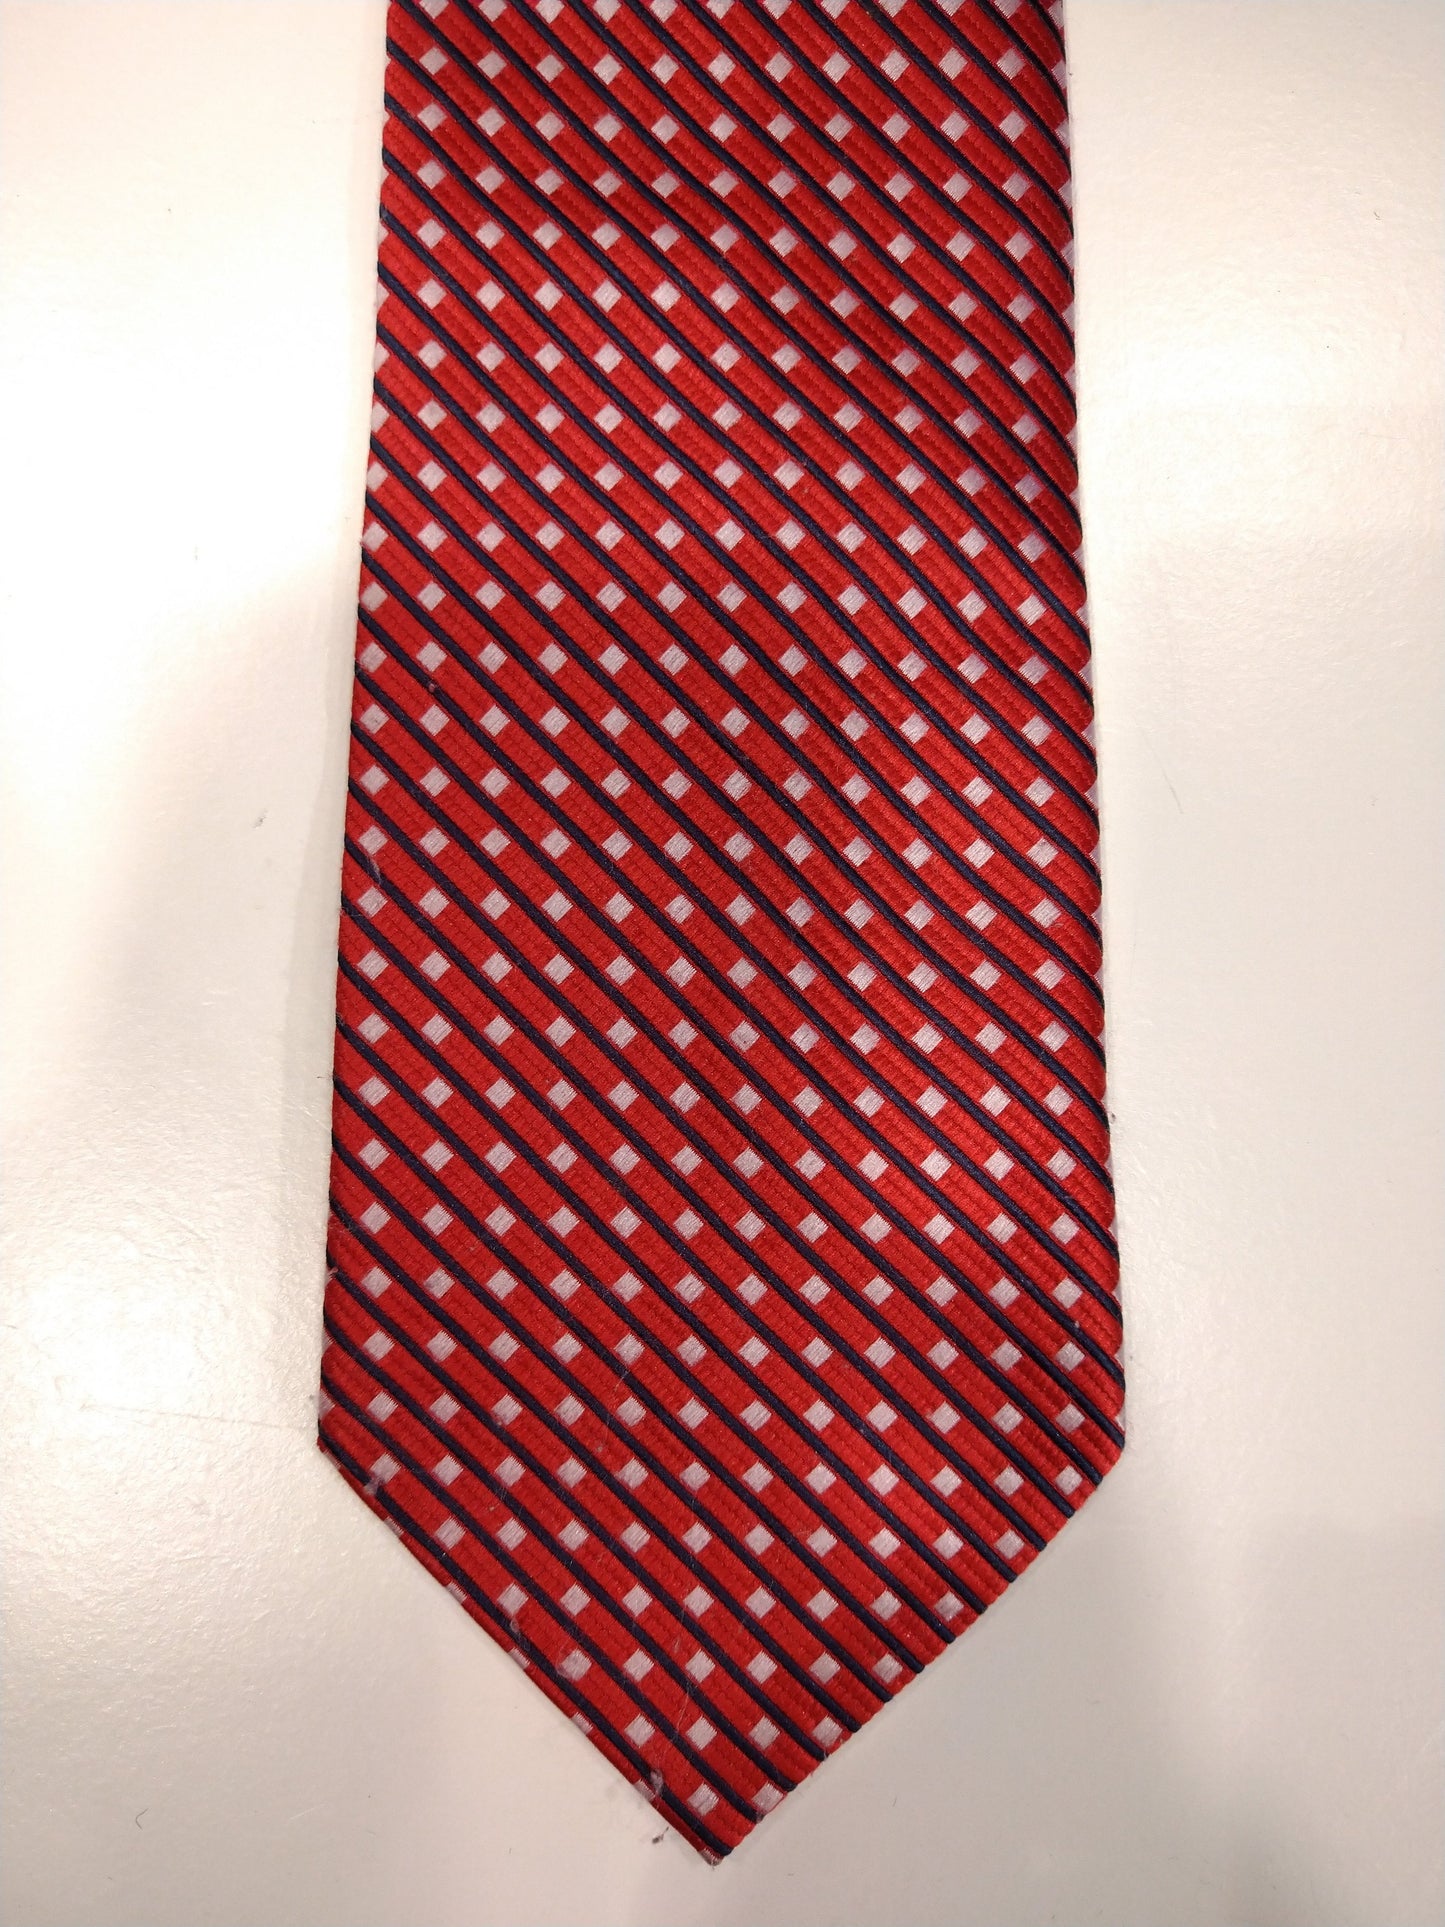 Corbata de seda vintage. Rojo con bolas blancas motivo.